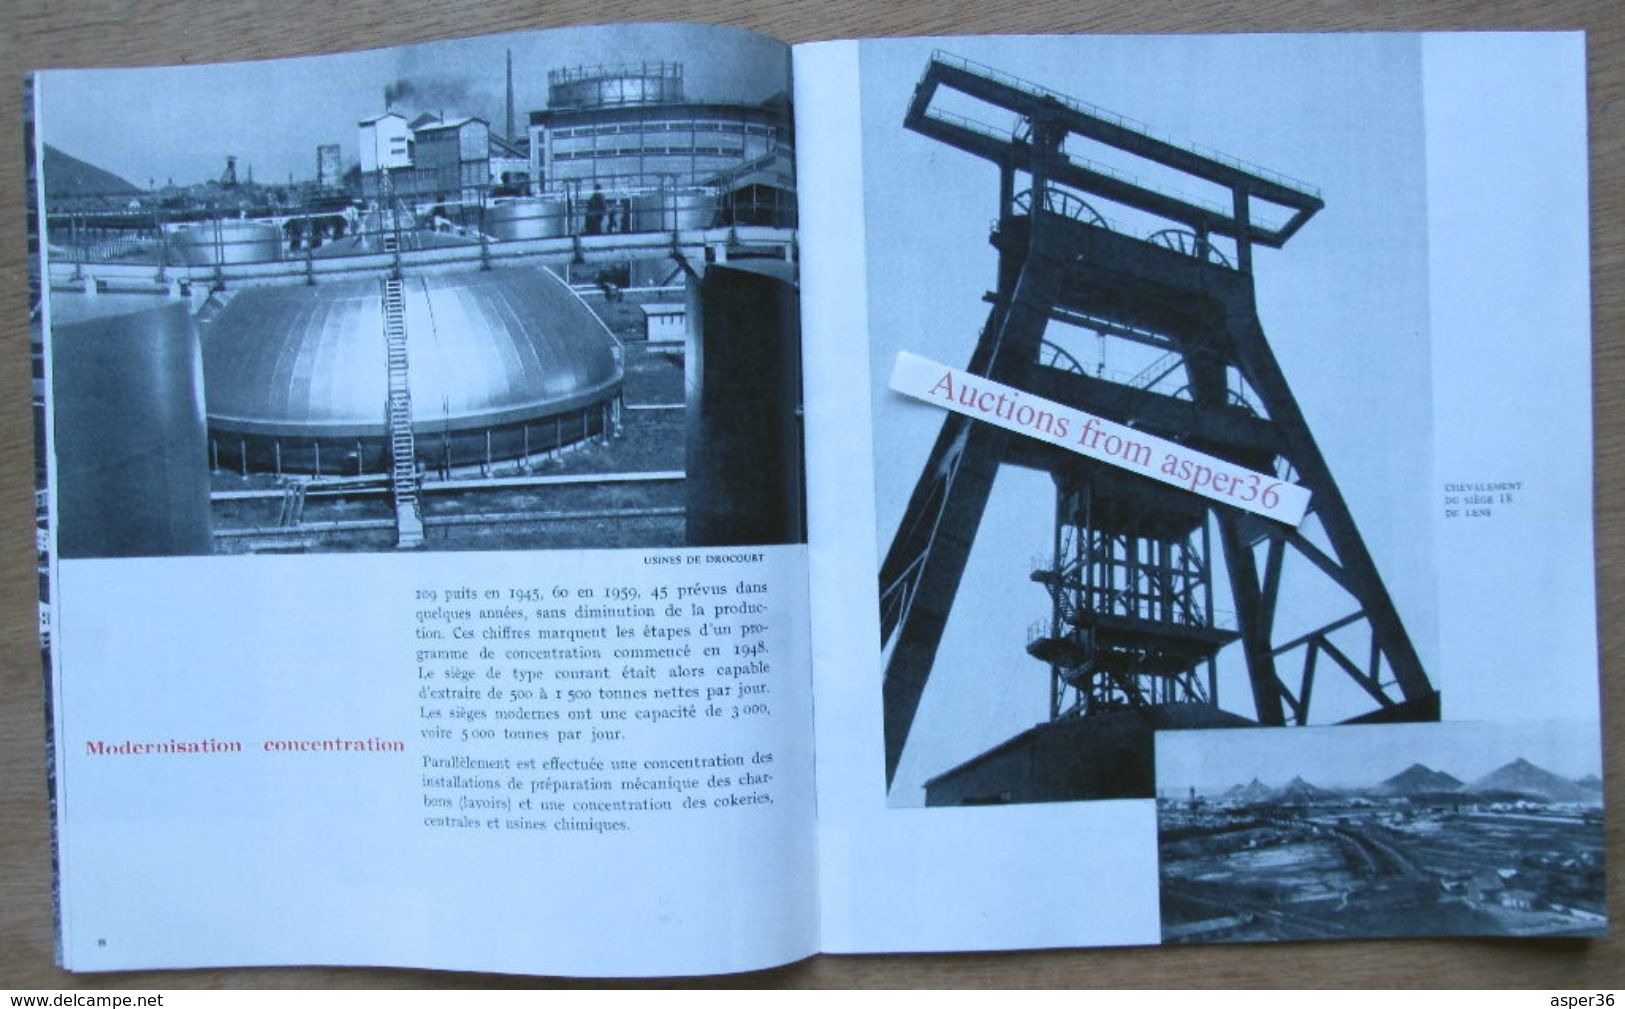 Les Houillères du Bassin du Nord et du Pas-de-Calais 1960 France (charbon, mines)